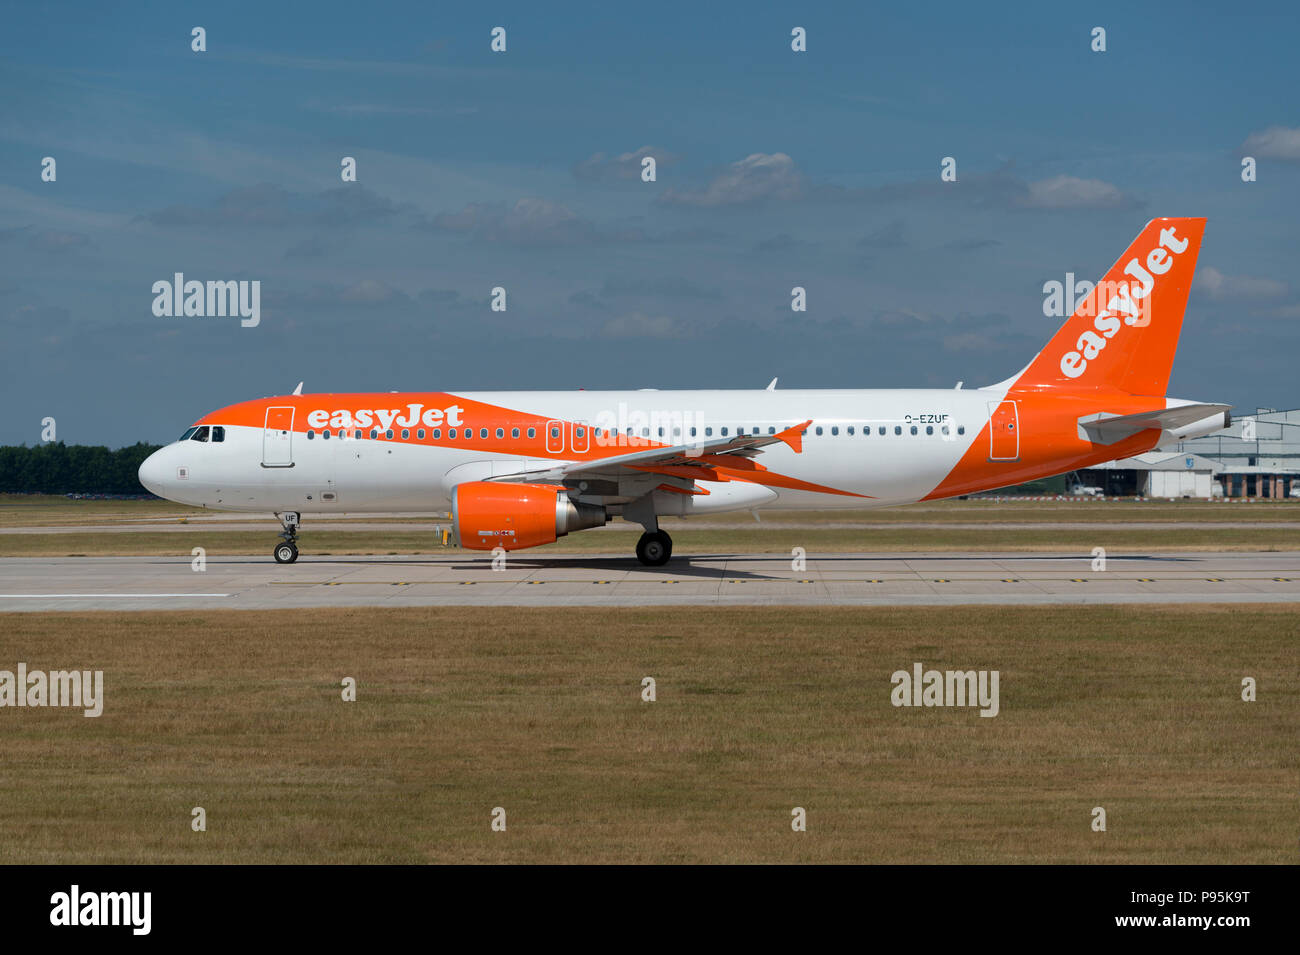 Un Airbus A319 d'Easyjet se trouve sur la piste à l'aéroport de Manchester alors qu'elle s'apprête à décoller. Banque D'Images